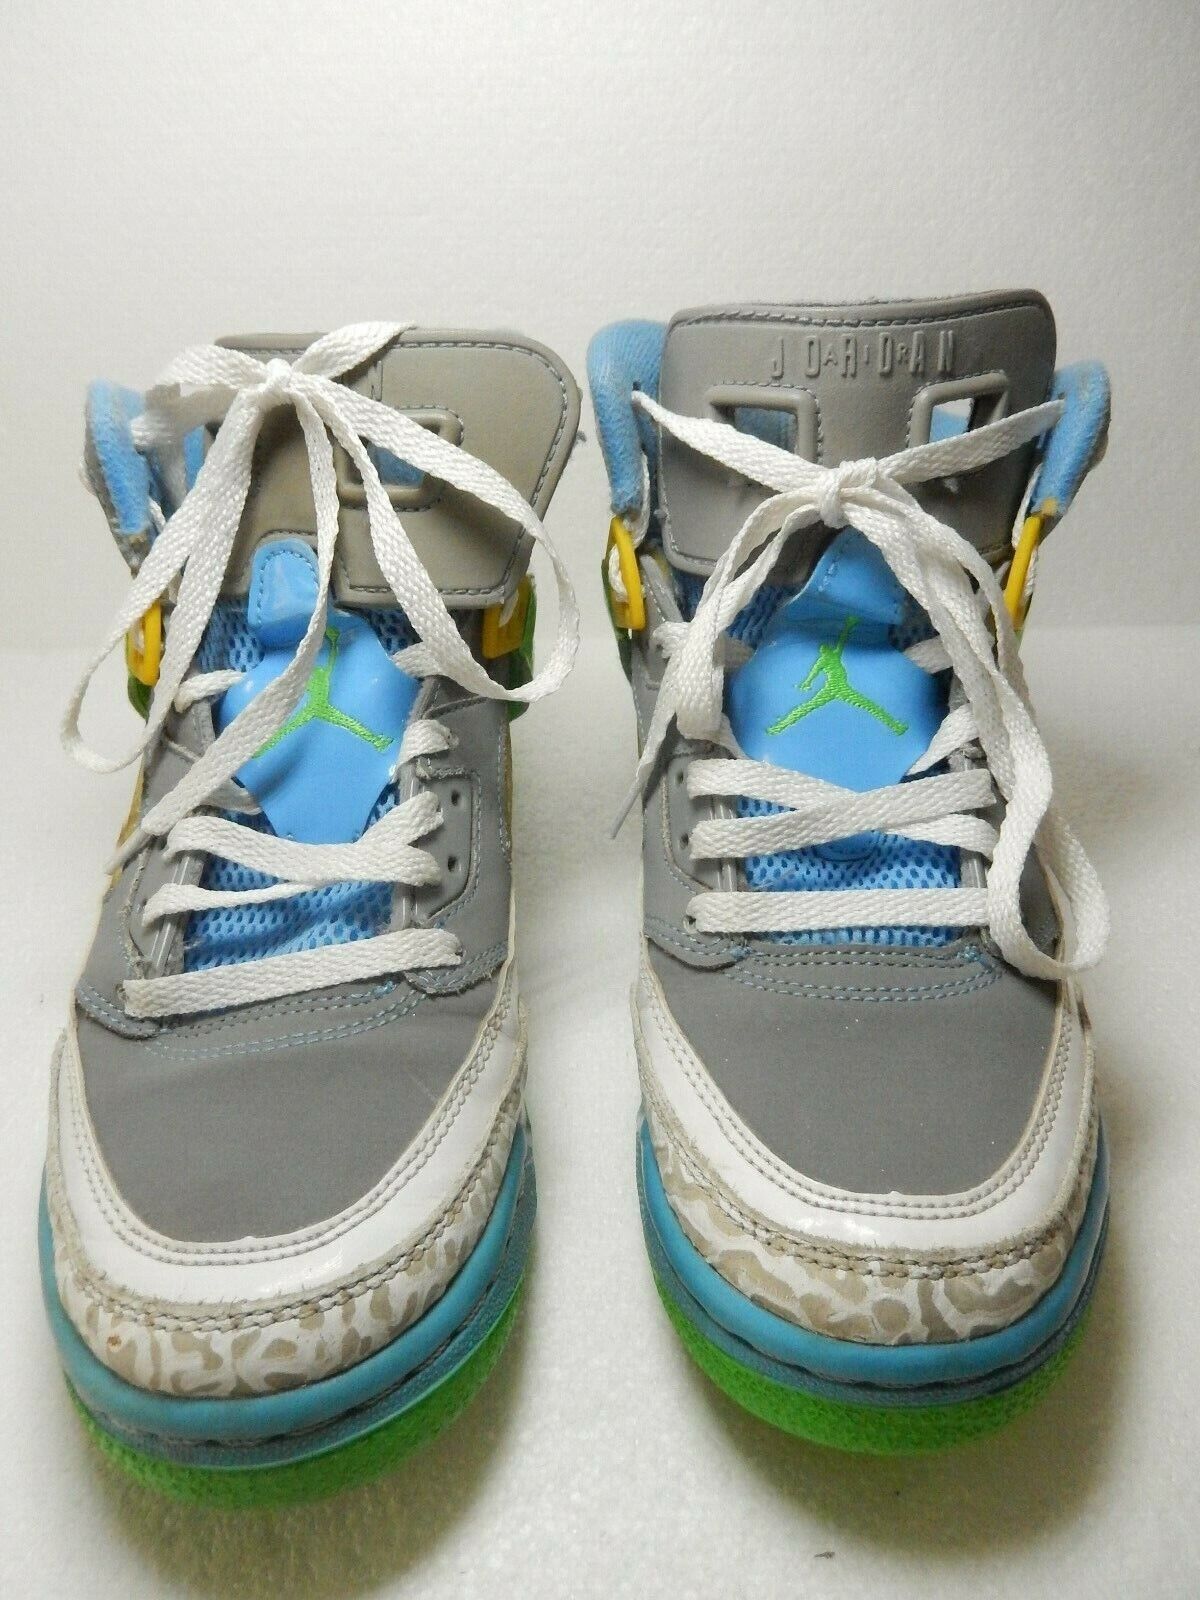 Nike Jordan Spizike GS Easter Stealth Grey Green Blue 317321-056 Size 5.5Y